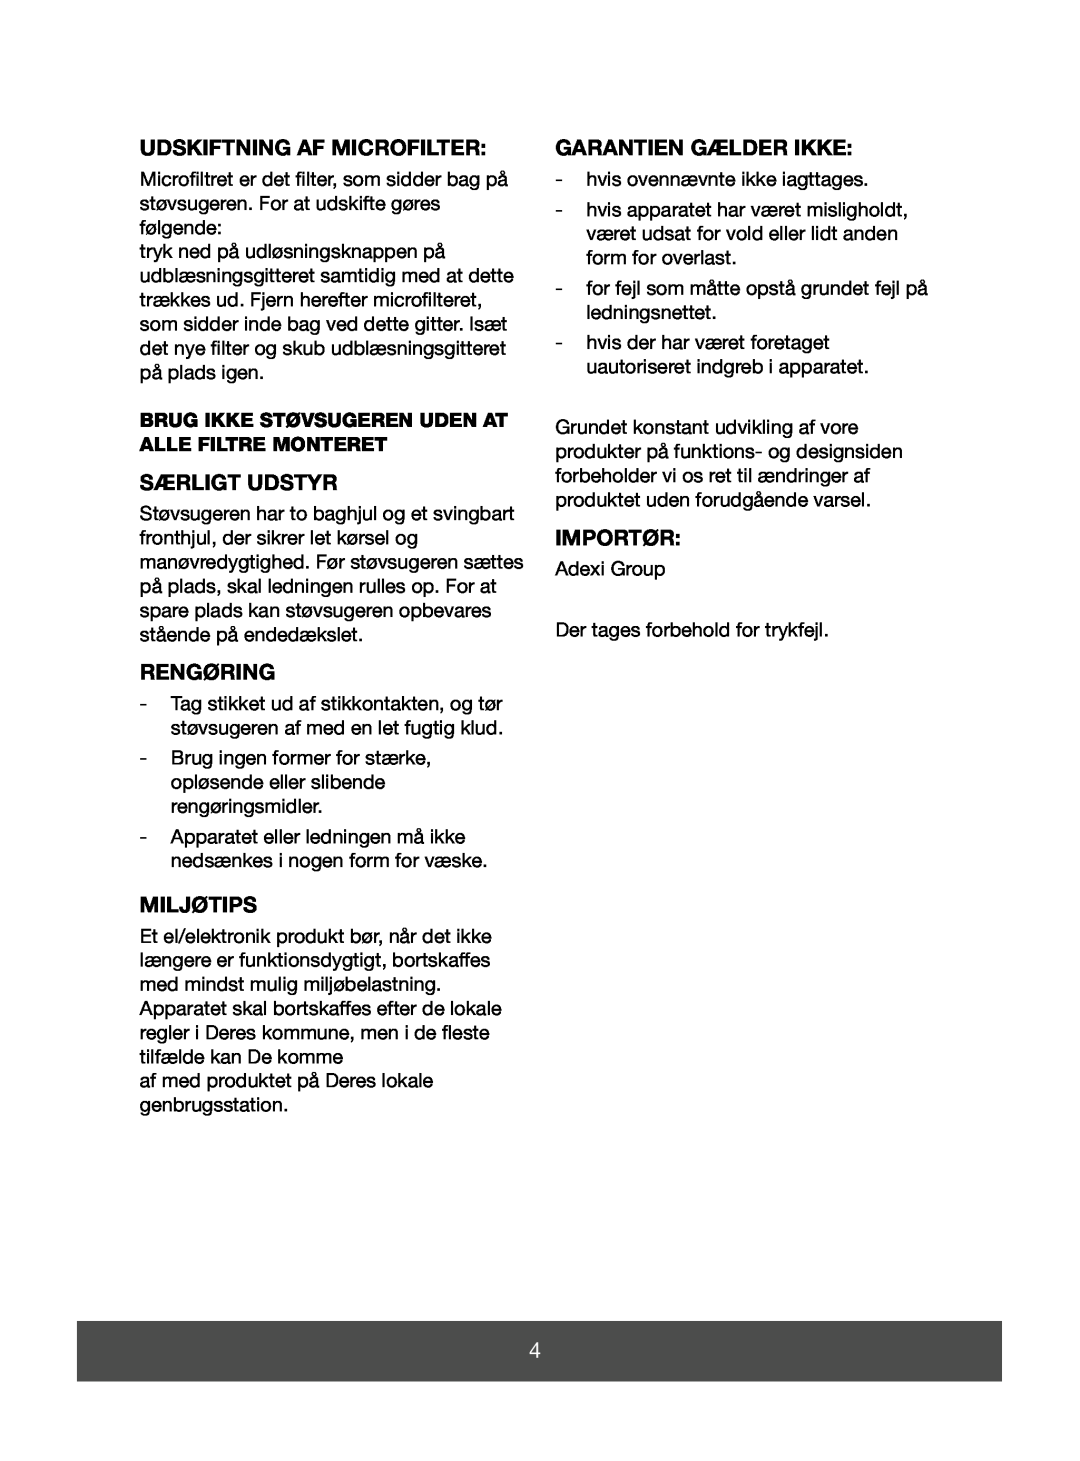 Melissa 640-064 manual Udskiftning Af Microfilter, Særligt Udstyr, Rengøring, Miljøtips, Garantien Gælder Ikke, Importør 